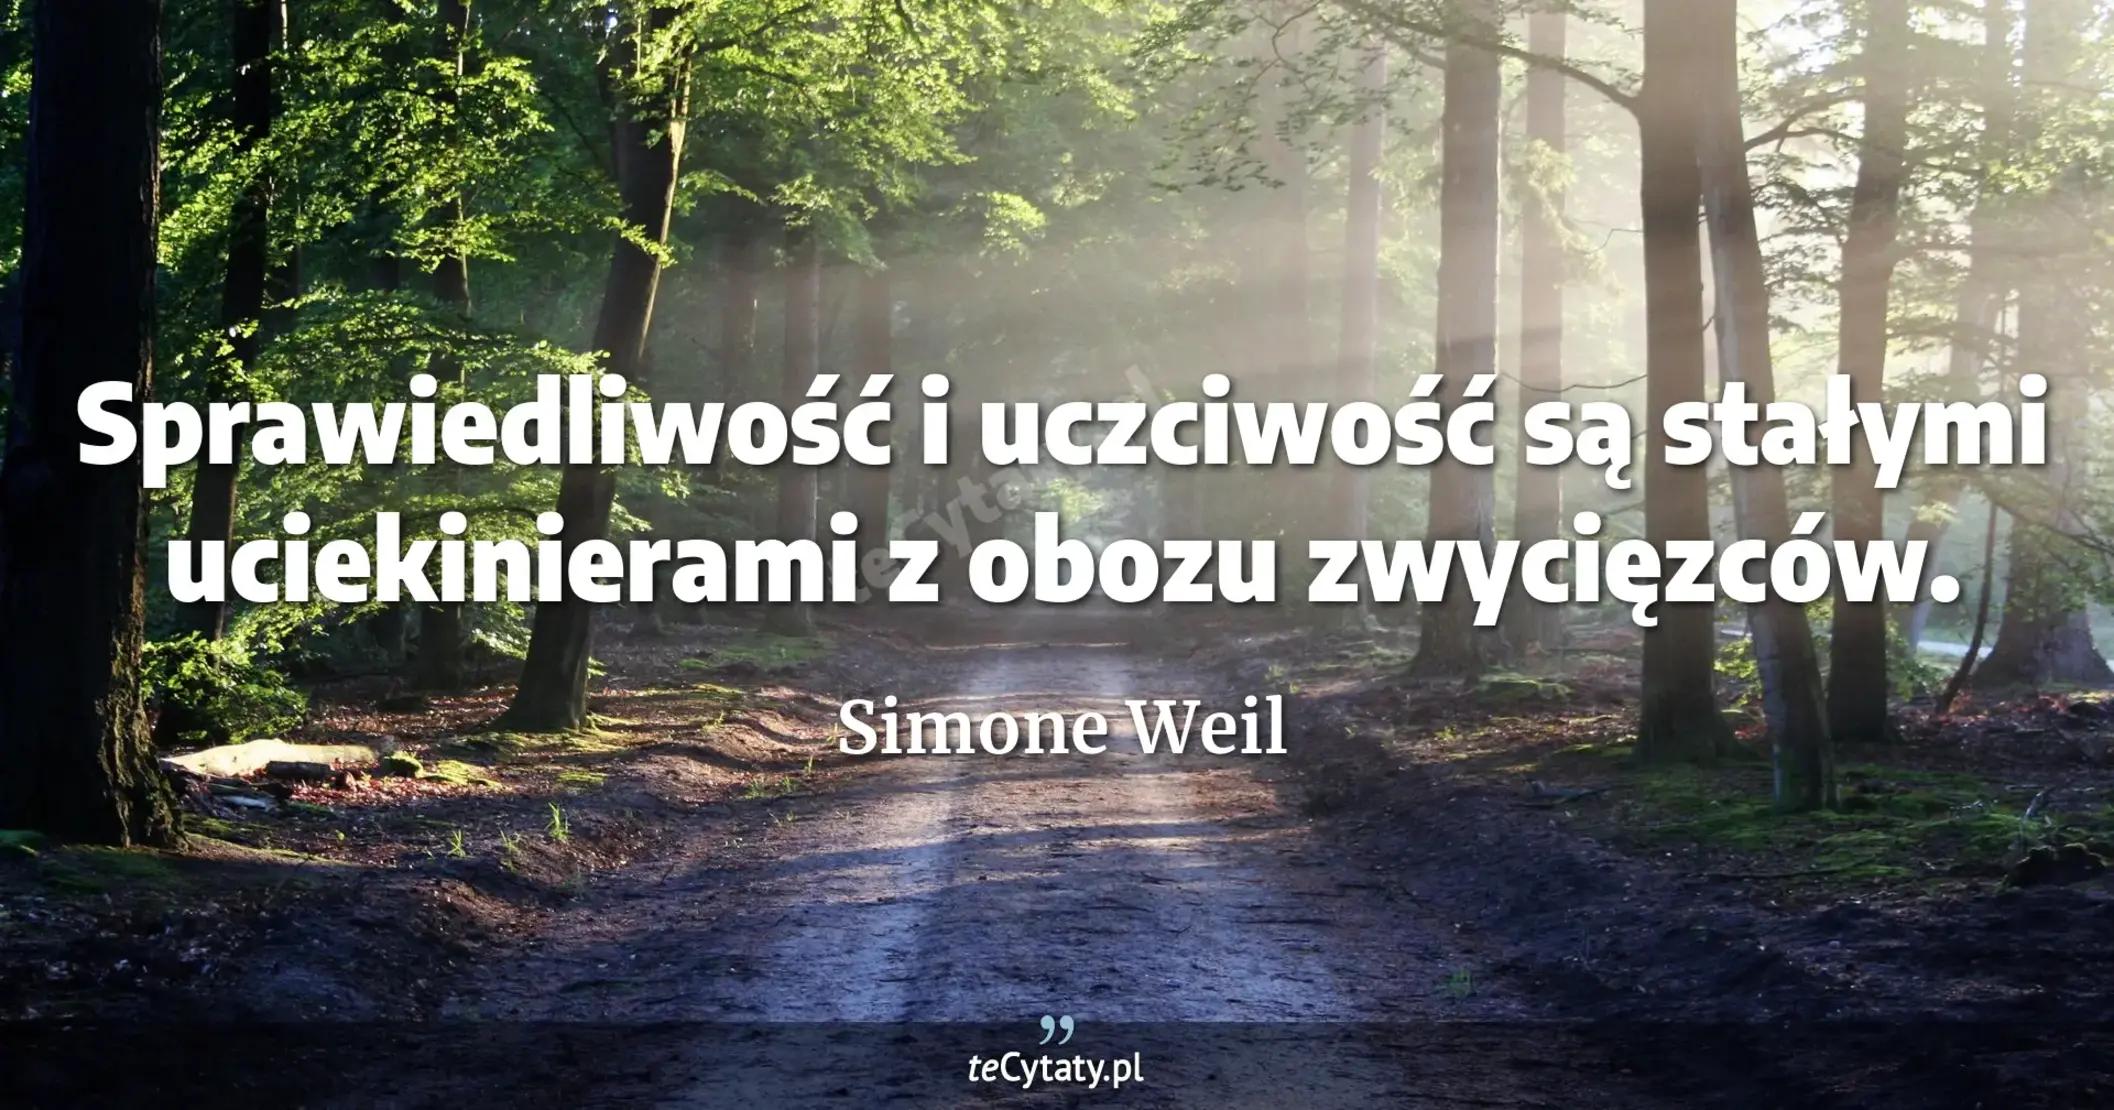 Sprawiedliwość i uczciwość są stałymi uciekinierami z obozu zwycięzców. - Simone Weil